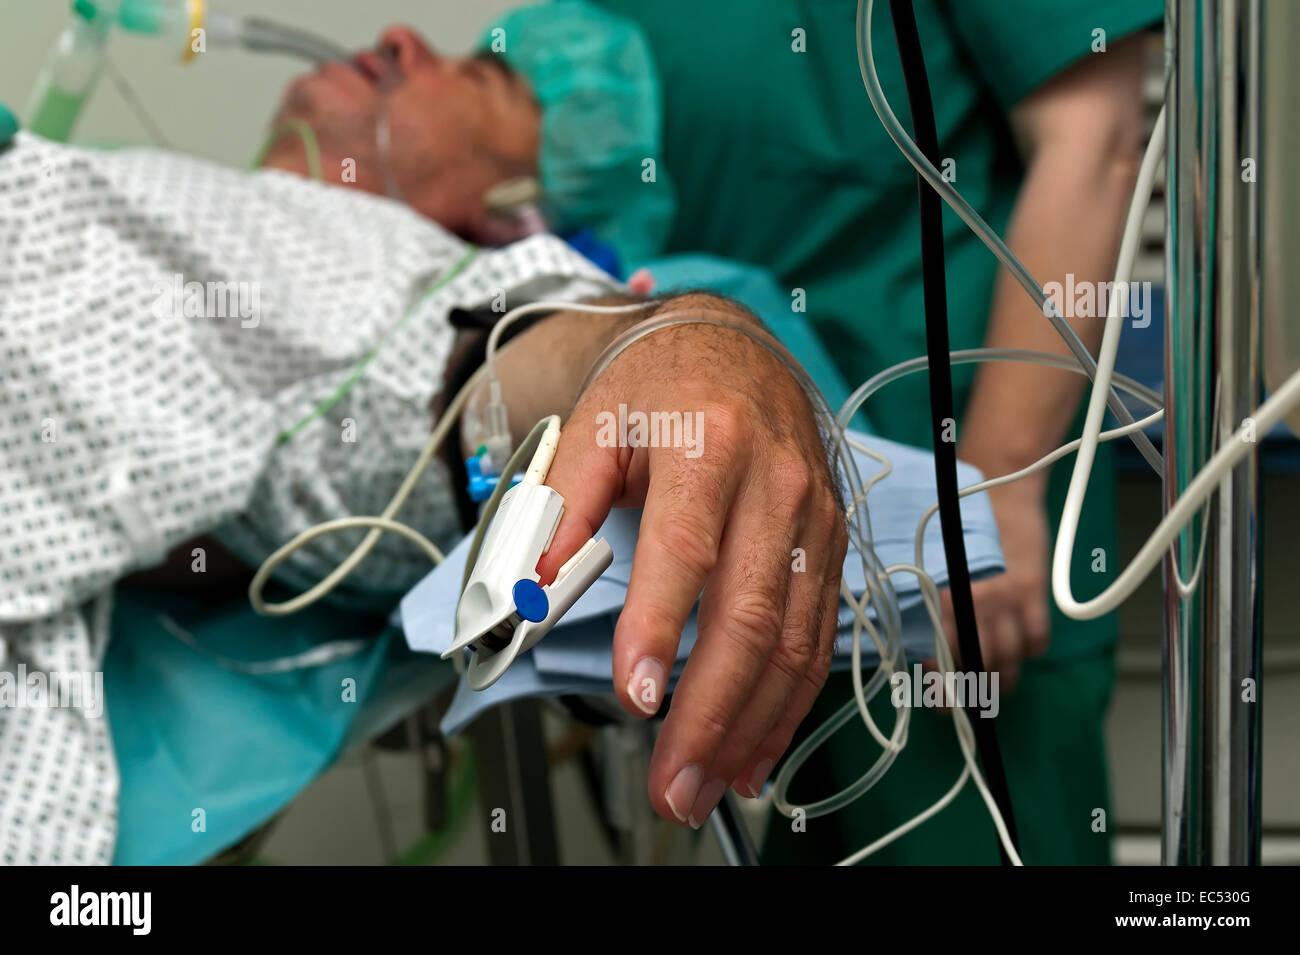 Il paziente è sotto anestesia generale con una periferica catetere venoso collegato al pulsossimetro Foto Stock